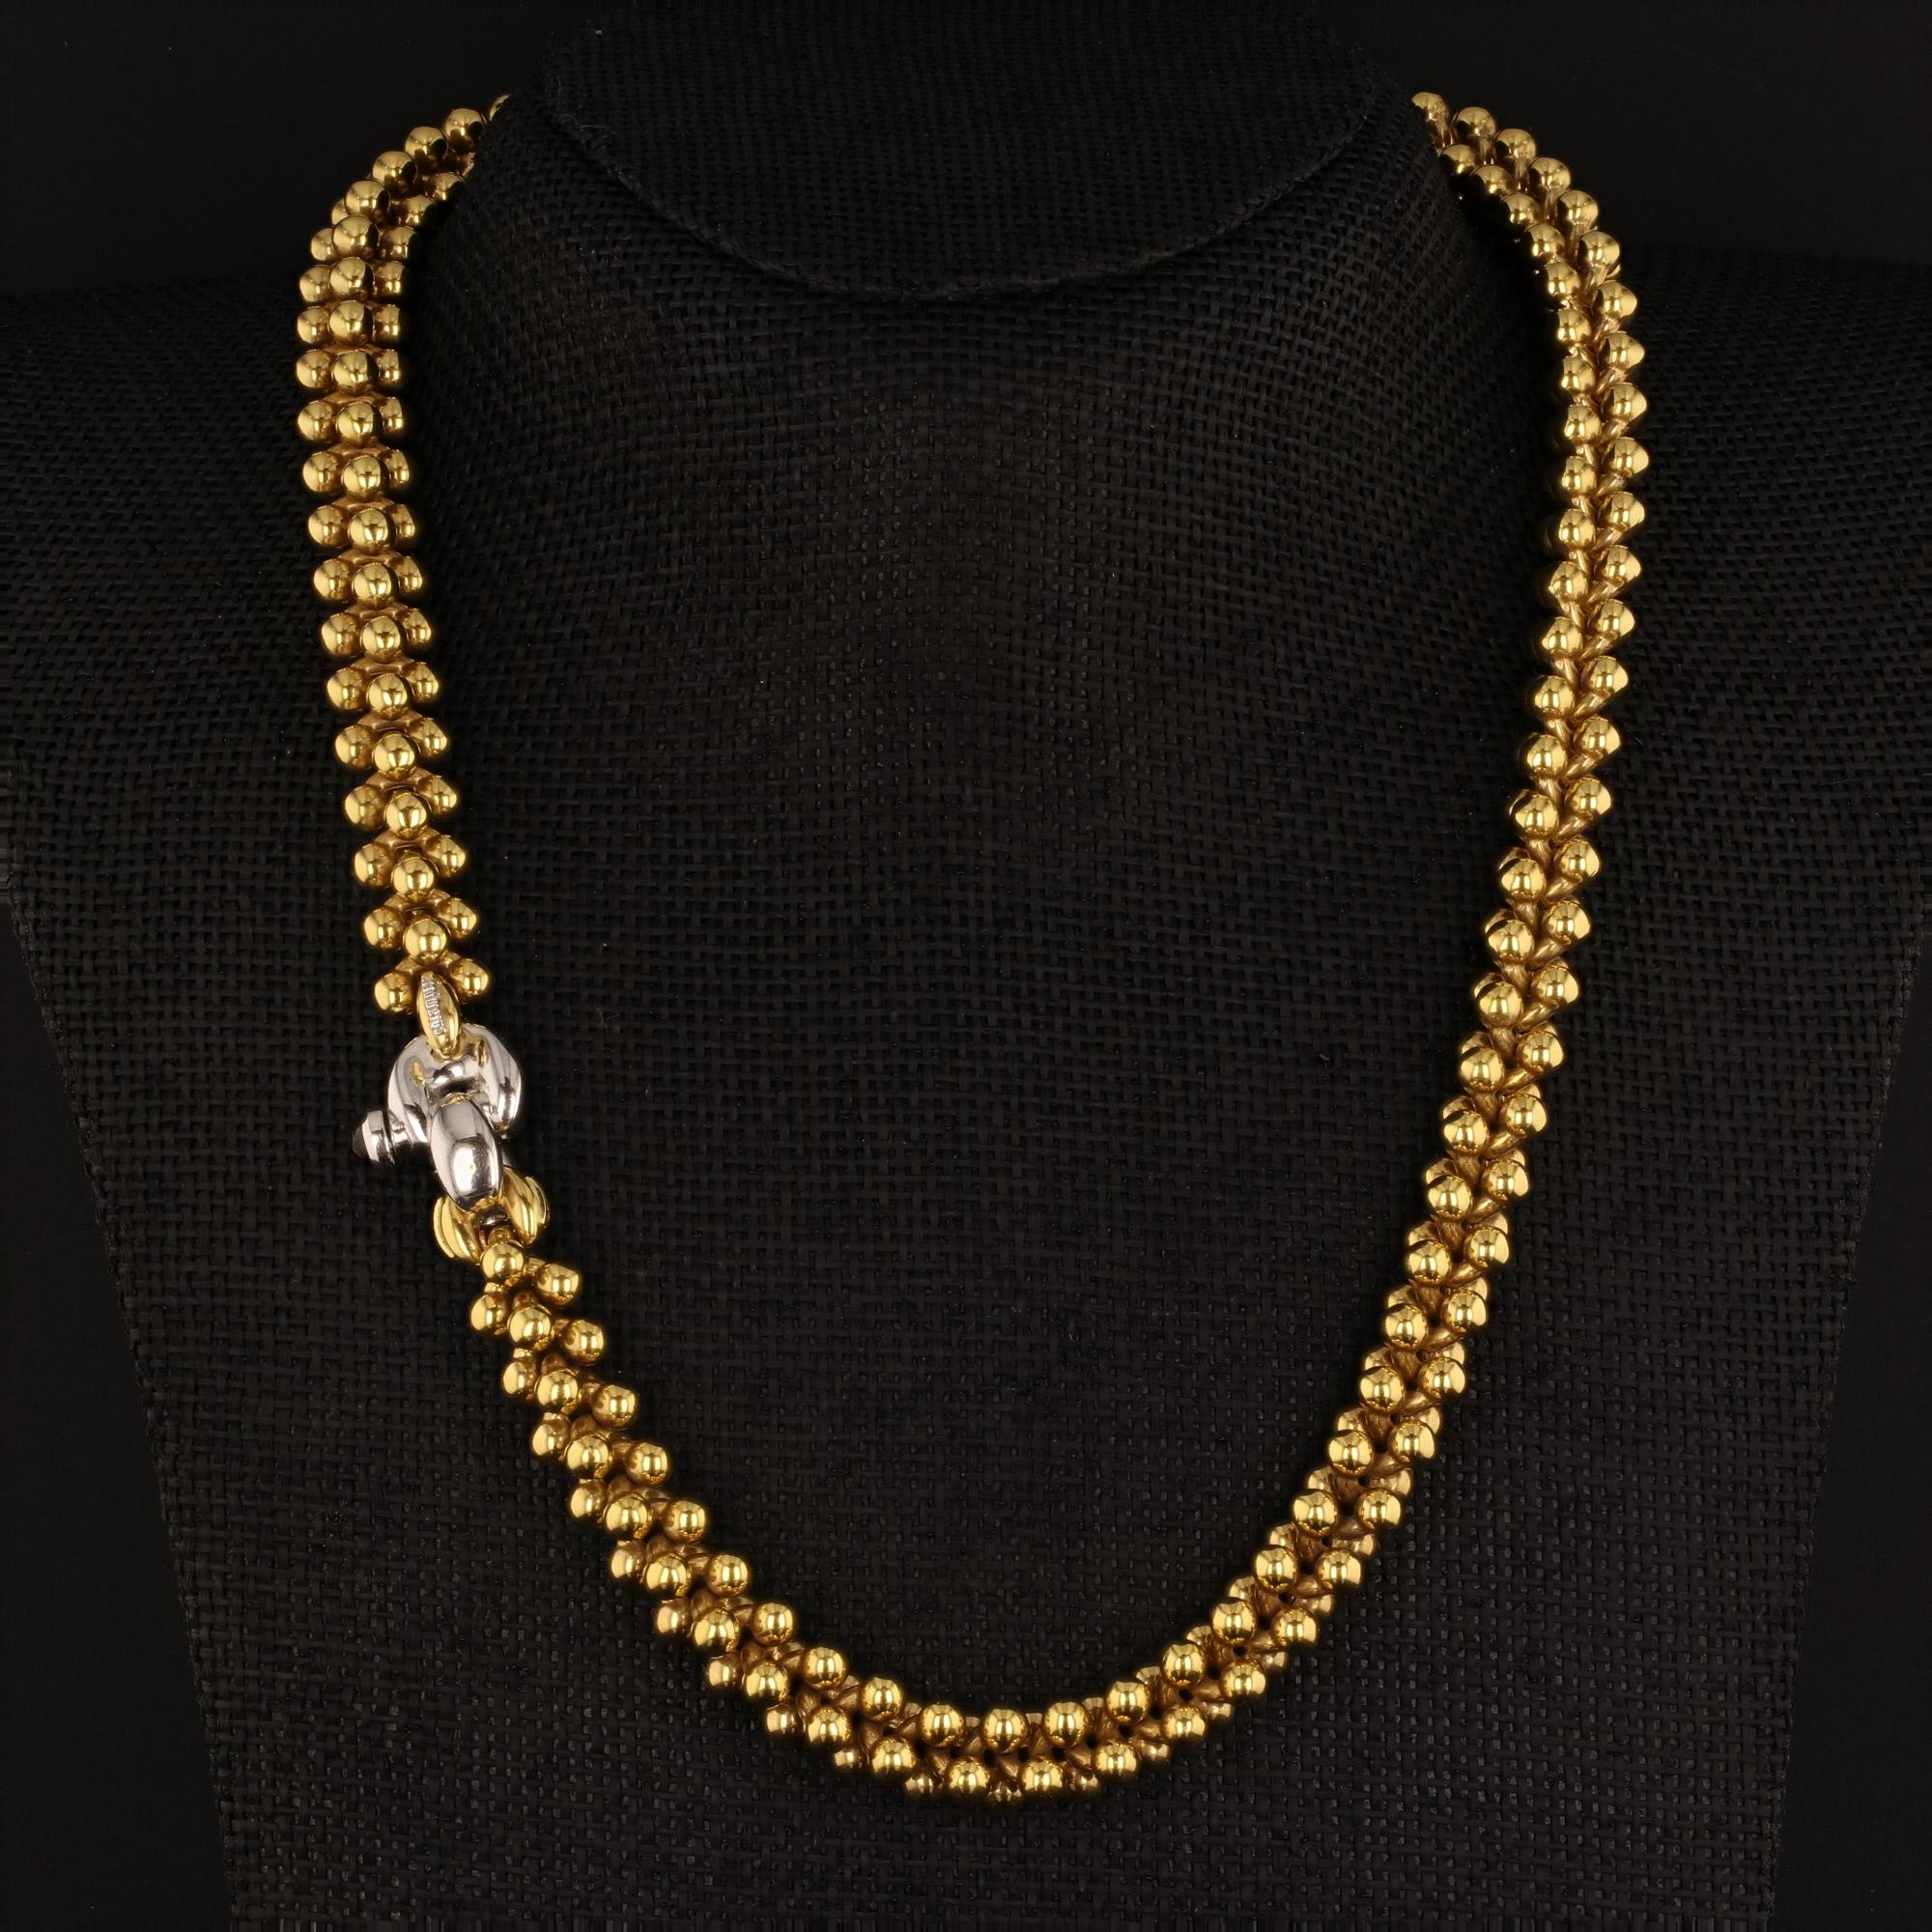 Questa collana di perle massicce in oro giallo 18 carati è di produzione italiana e firmata da Chiampesan, offerta da Alex & Co. Questa collana unica è progettata con maglie di perline intrecciate e presenta una chiusura in oro bianco 18 carati con